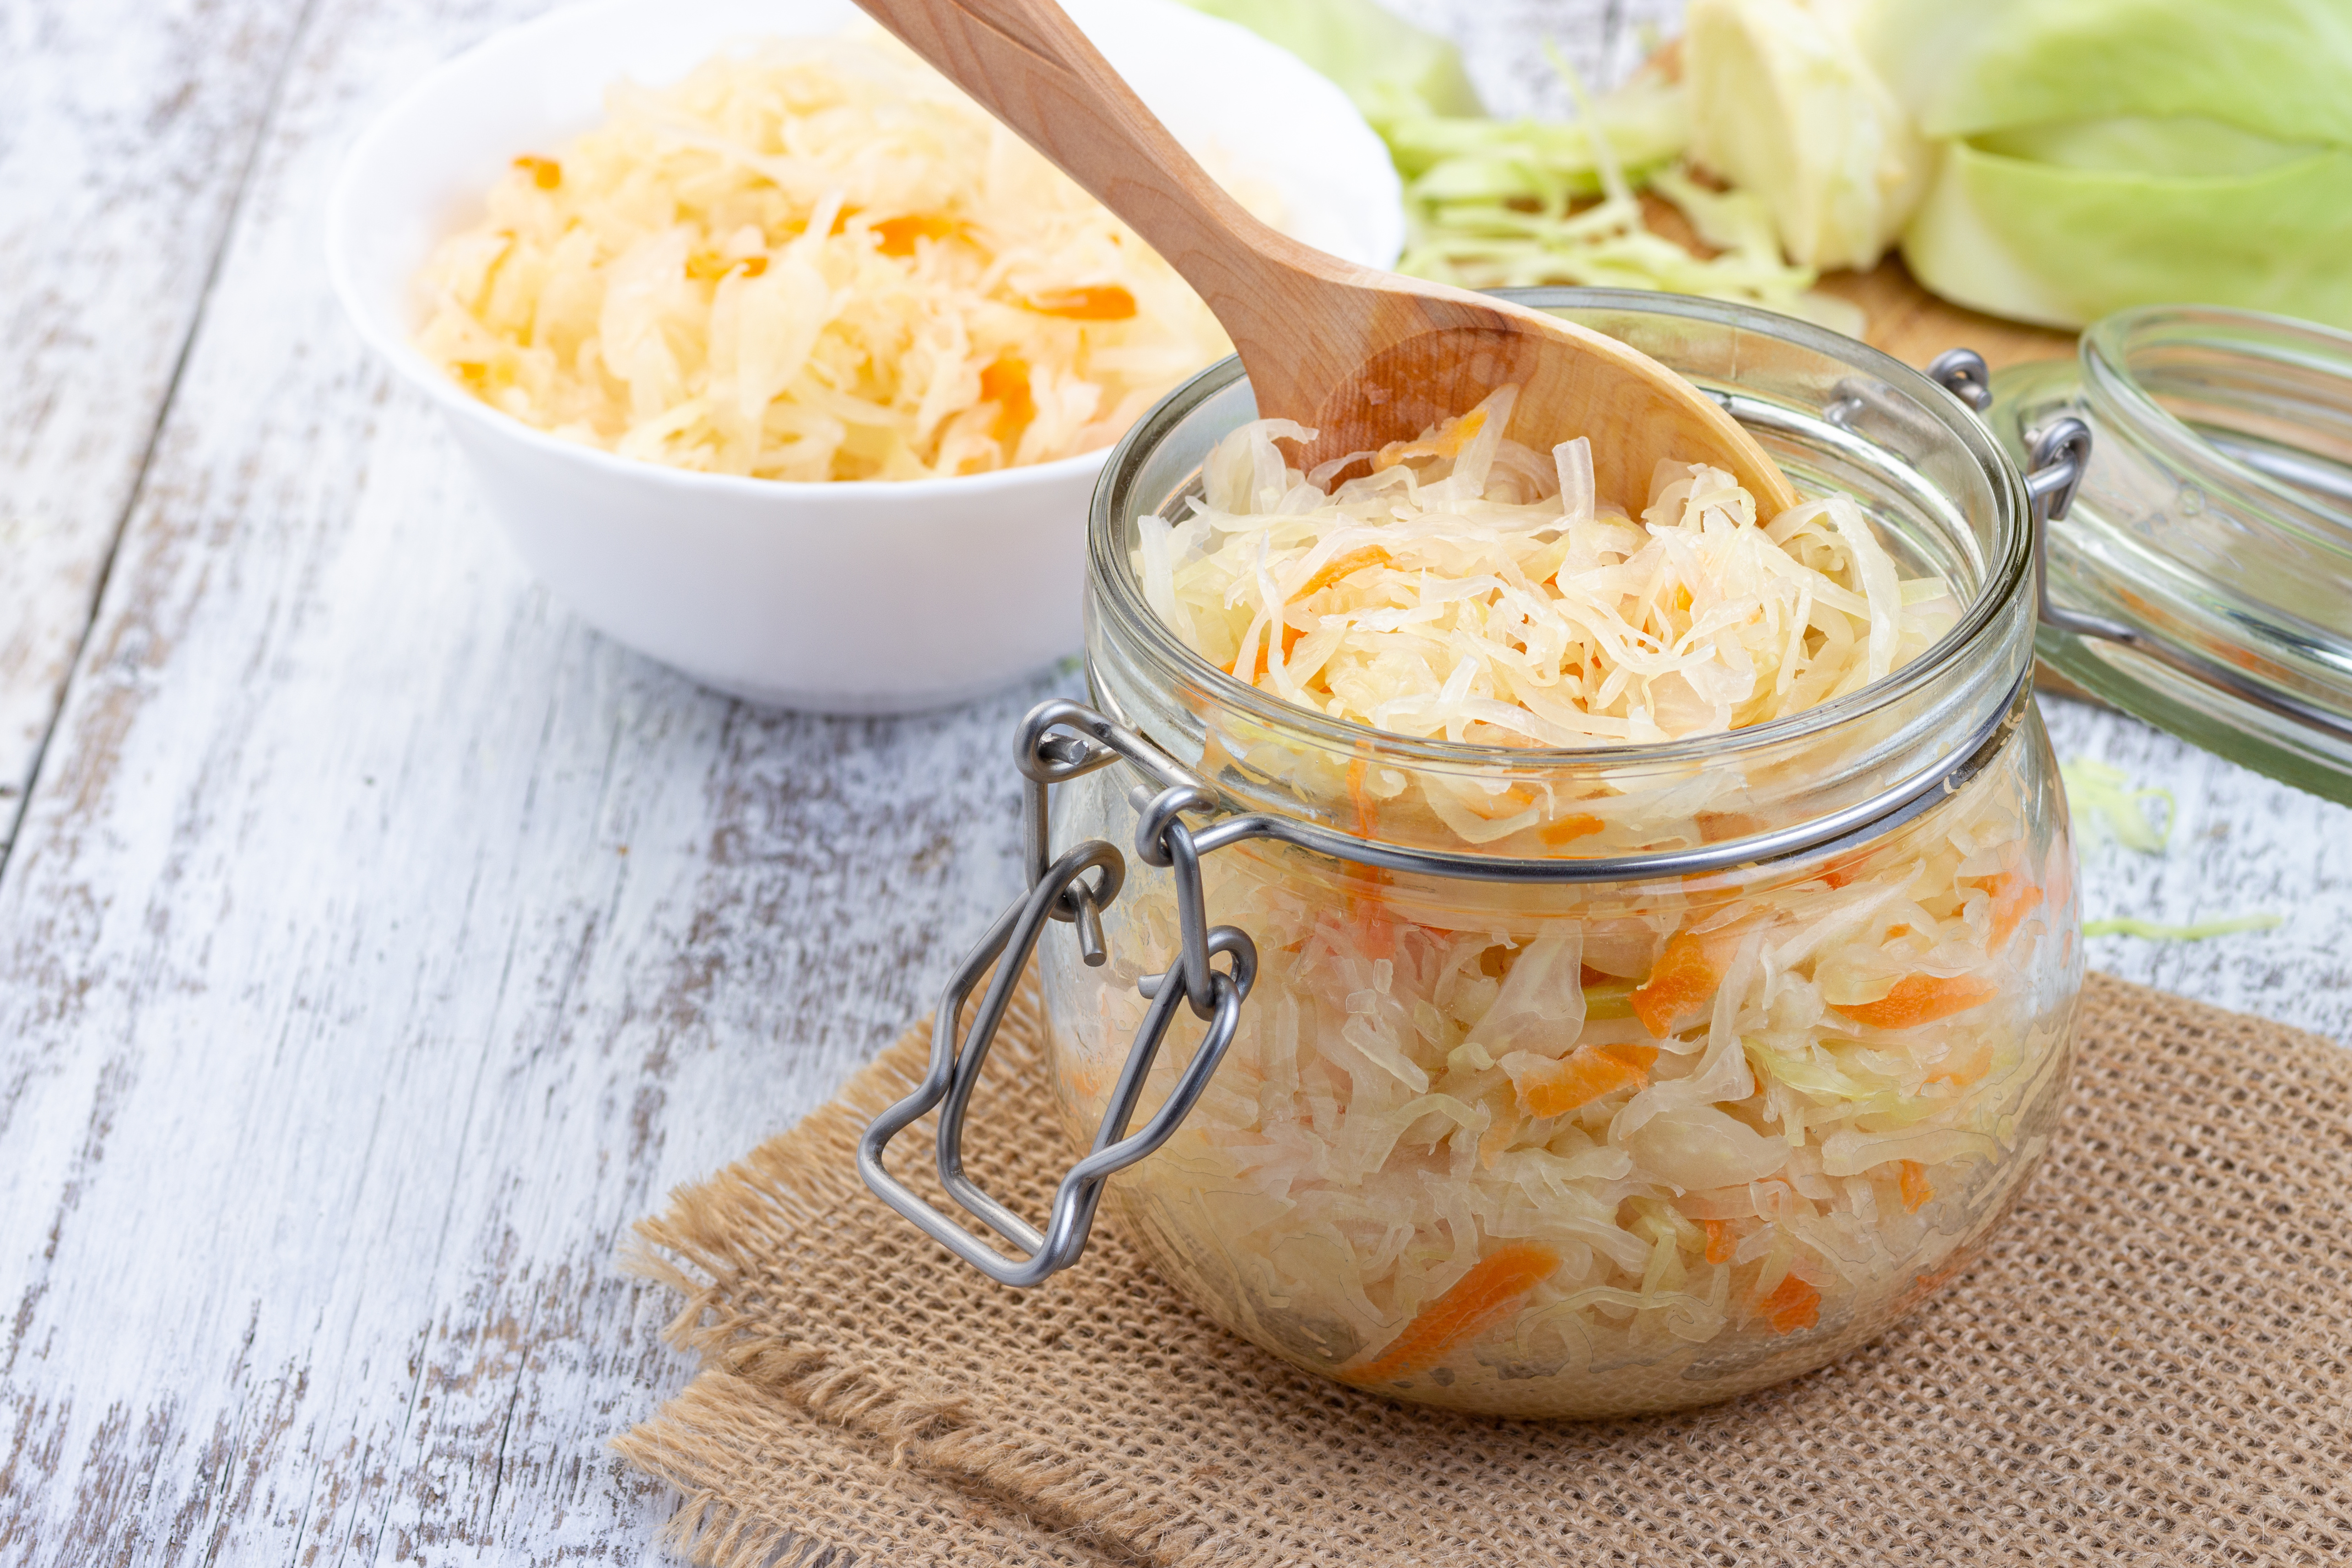 wooden-spoon-in-pot-of-sauerkraut